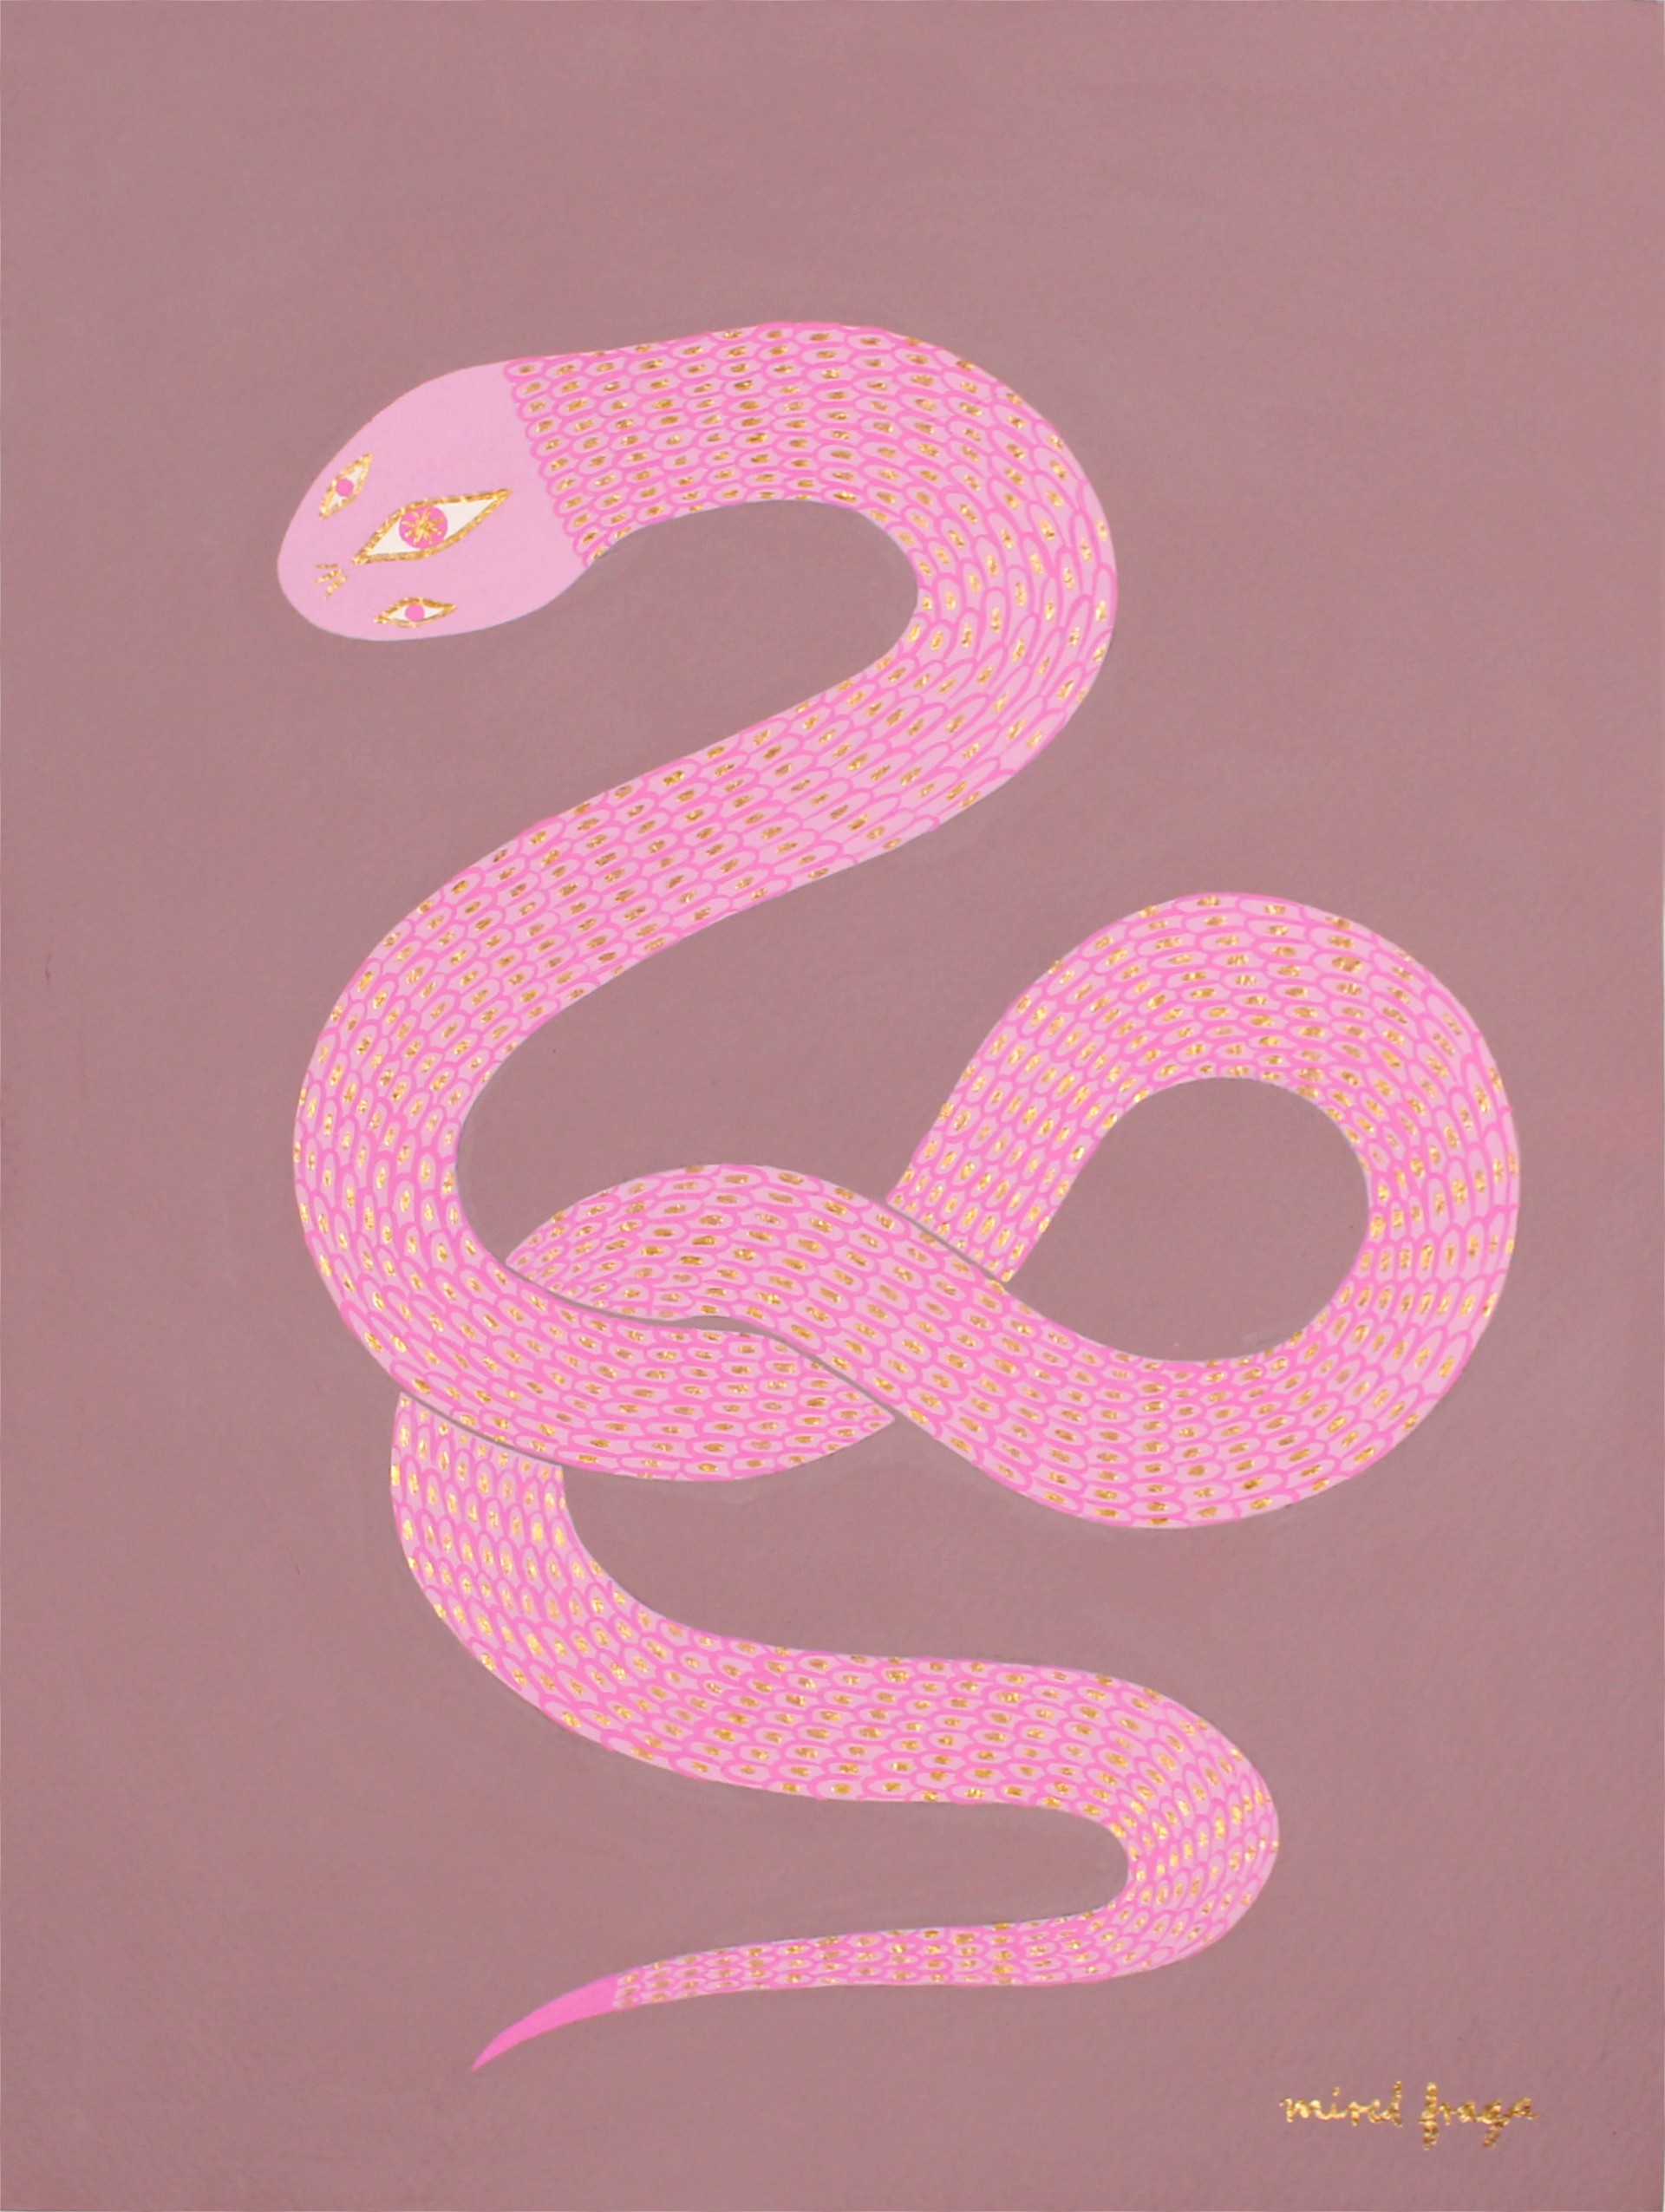 Serpent 1 by Mirel Fraga